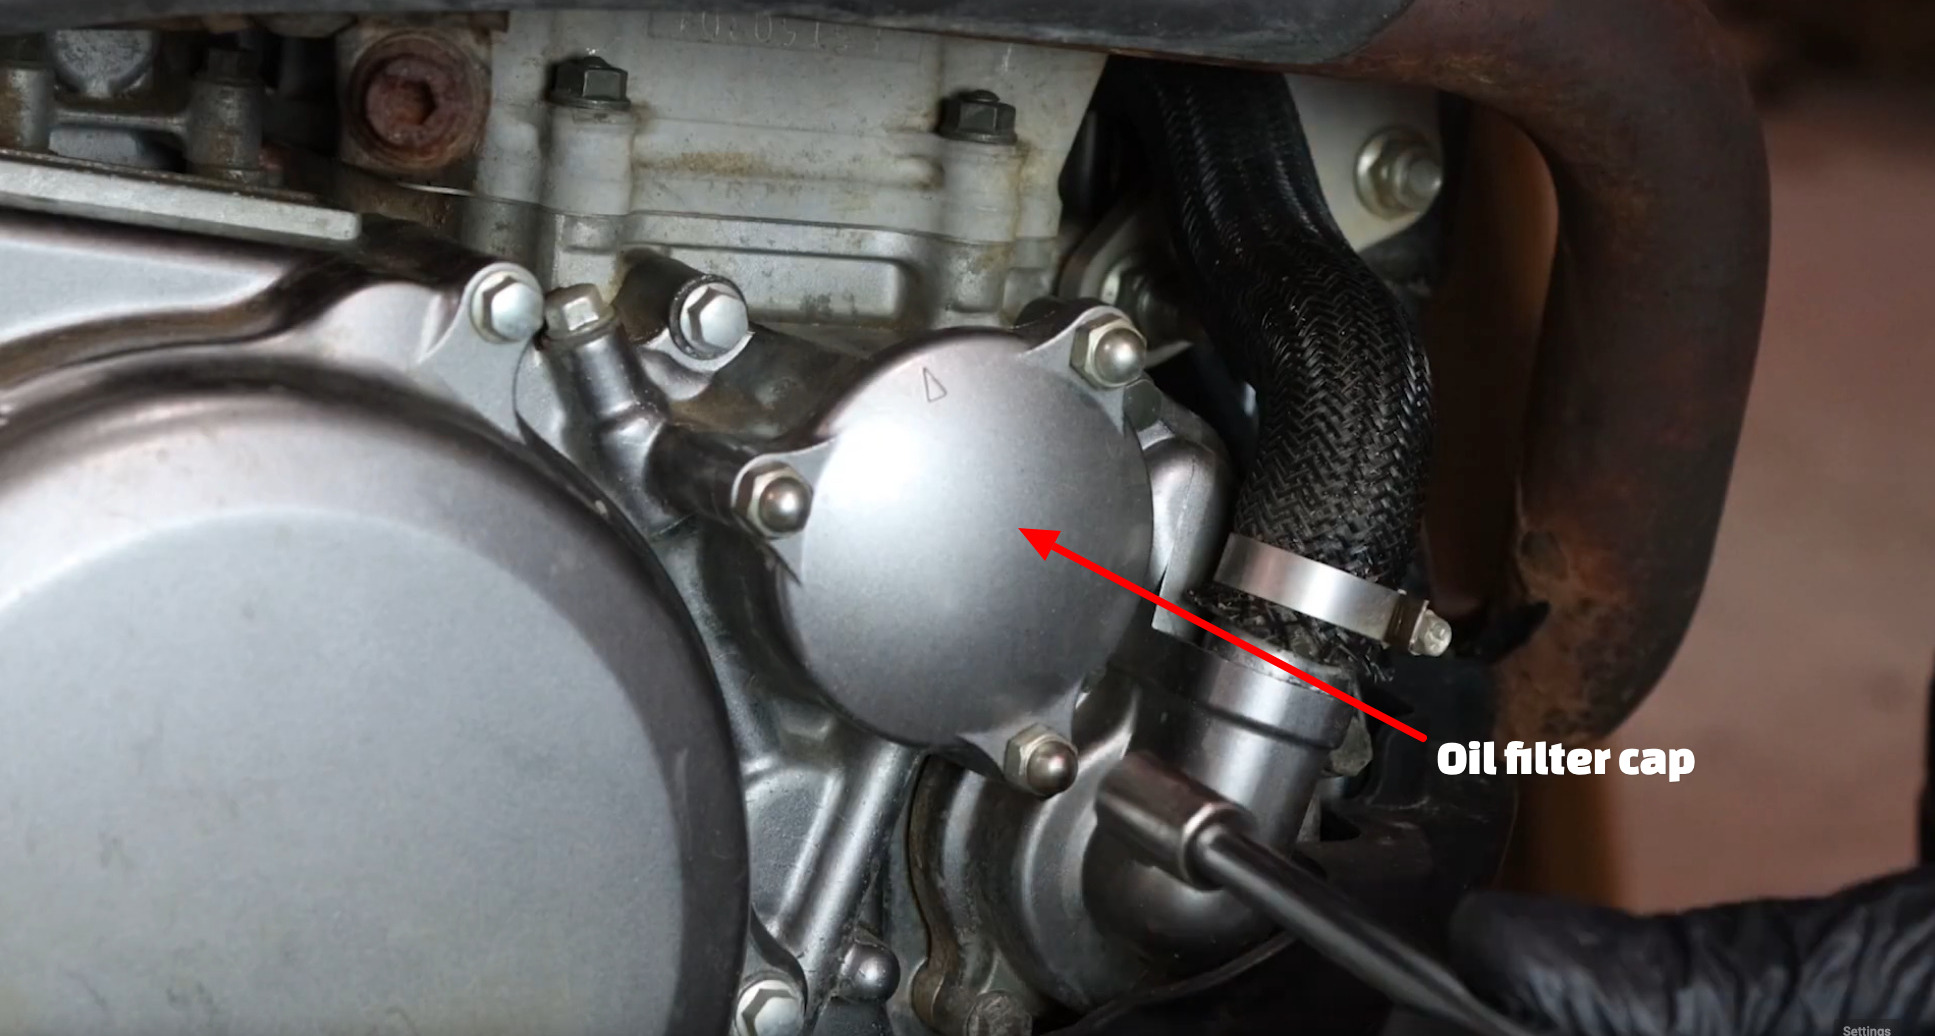 Suzuki DRZ400 oil change filter cap